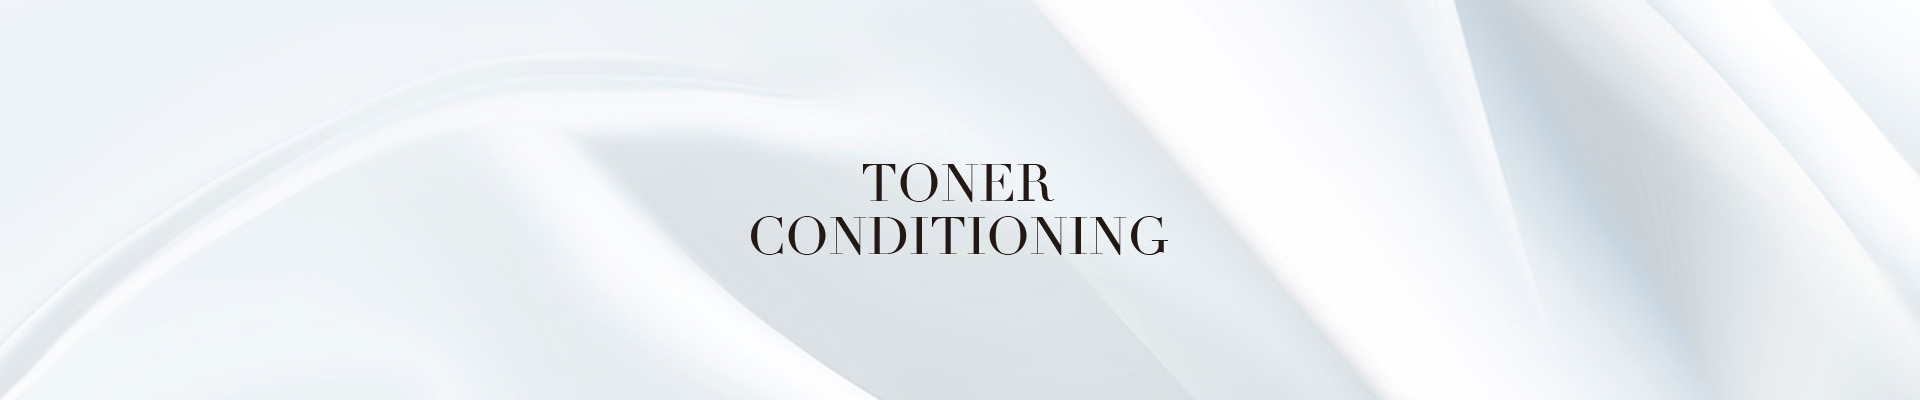 Toner Conditioning